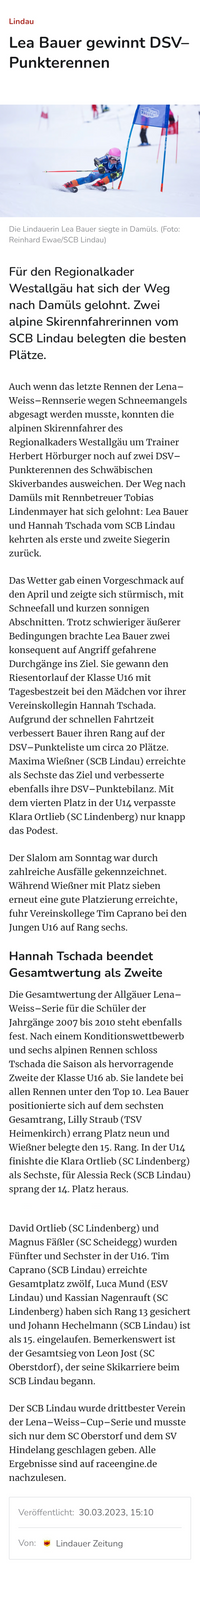 30.03.2023 Lindauer Zeitung